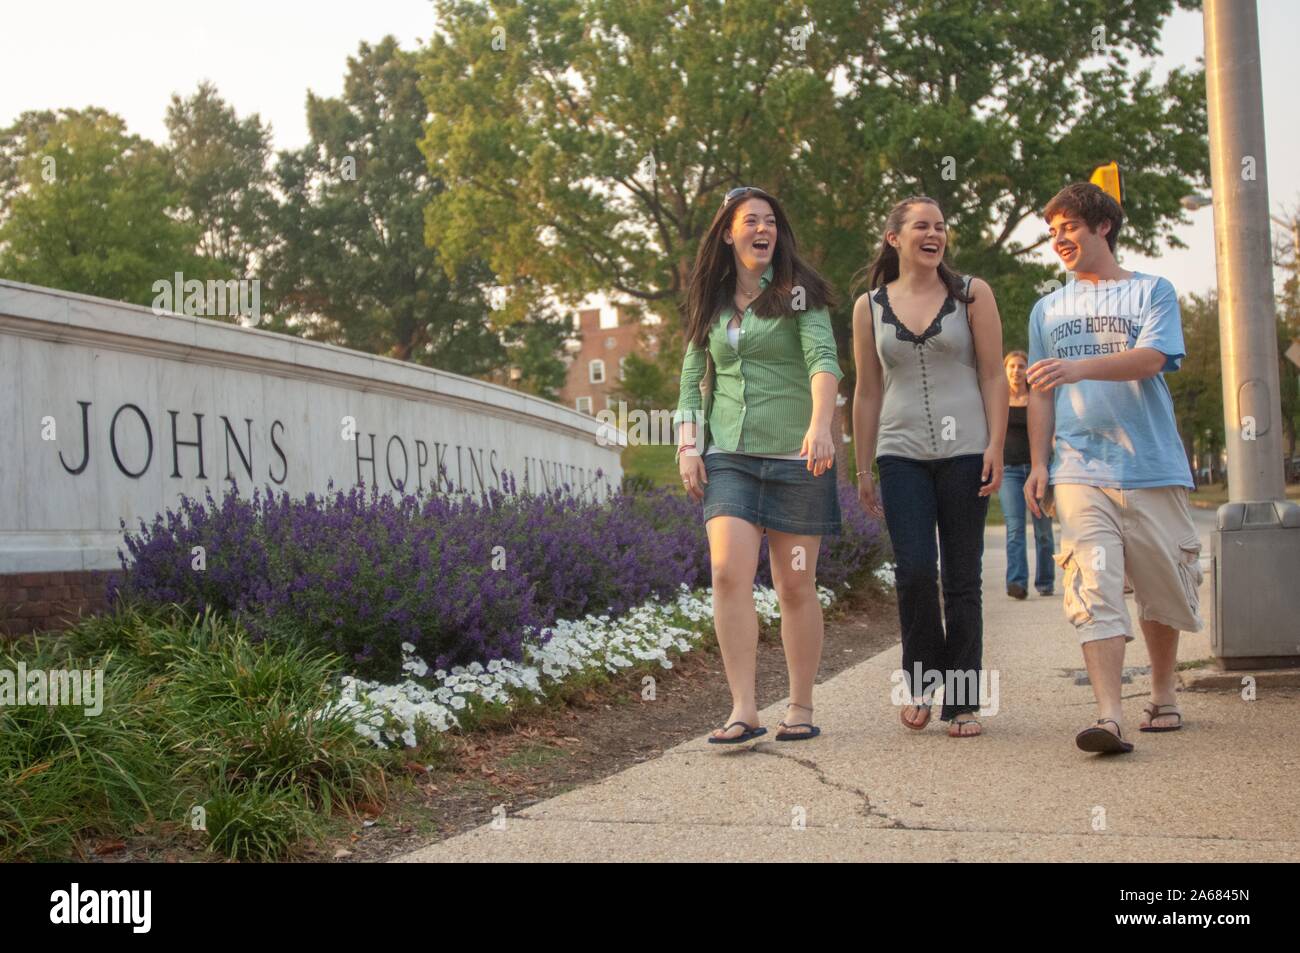 Tir à faible angle de trois étudiants, en riant lorsqu'ils marchent le long d'un trottoir, devant un panneau en béton bas gravé avec les mots 'Johns Hopkins University, ' Baltimore, Maryland, 26 septembre 2007. De La Homewood Photography Collection. () Banque D'Images